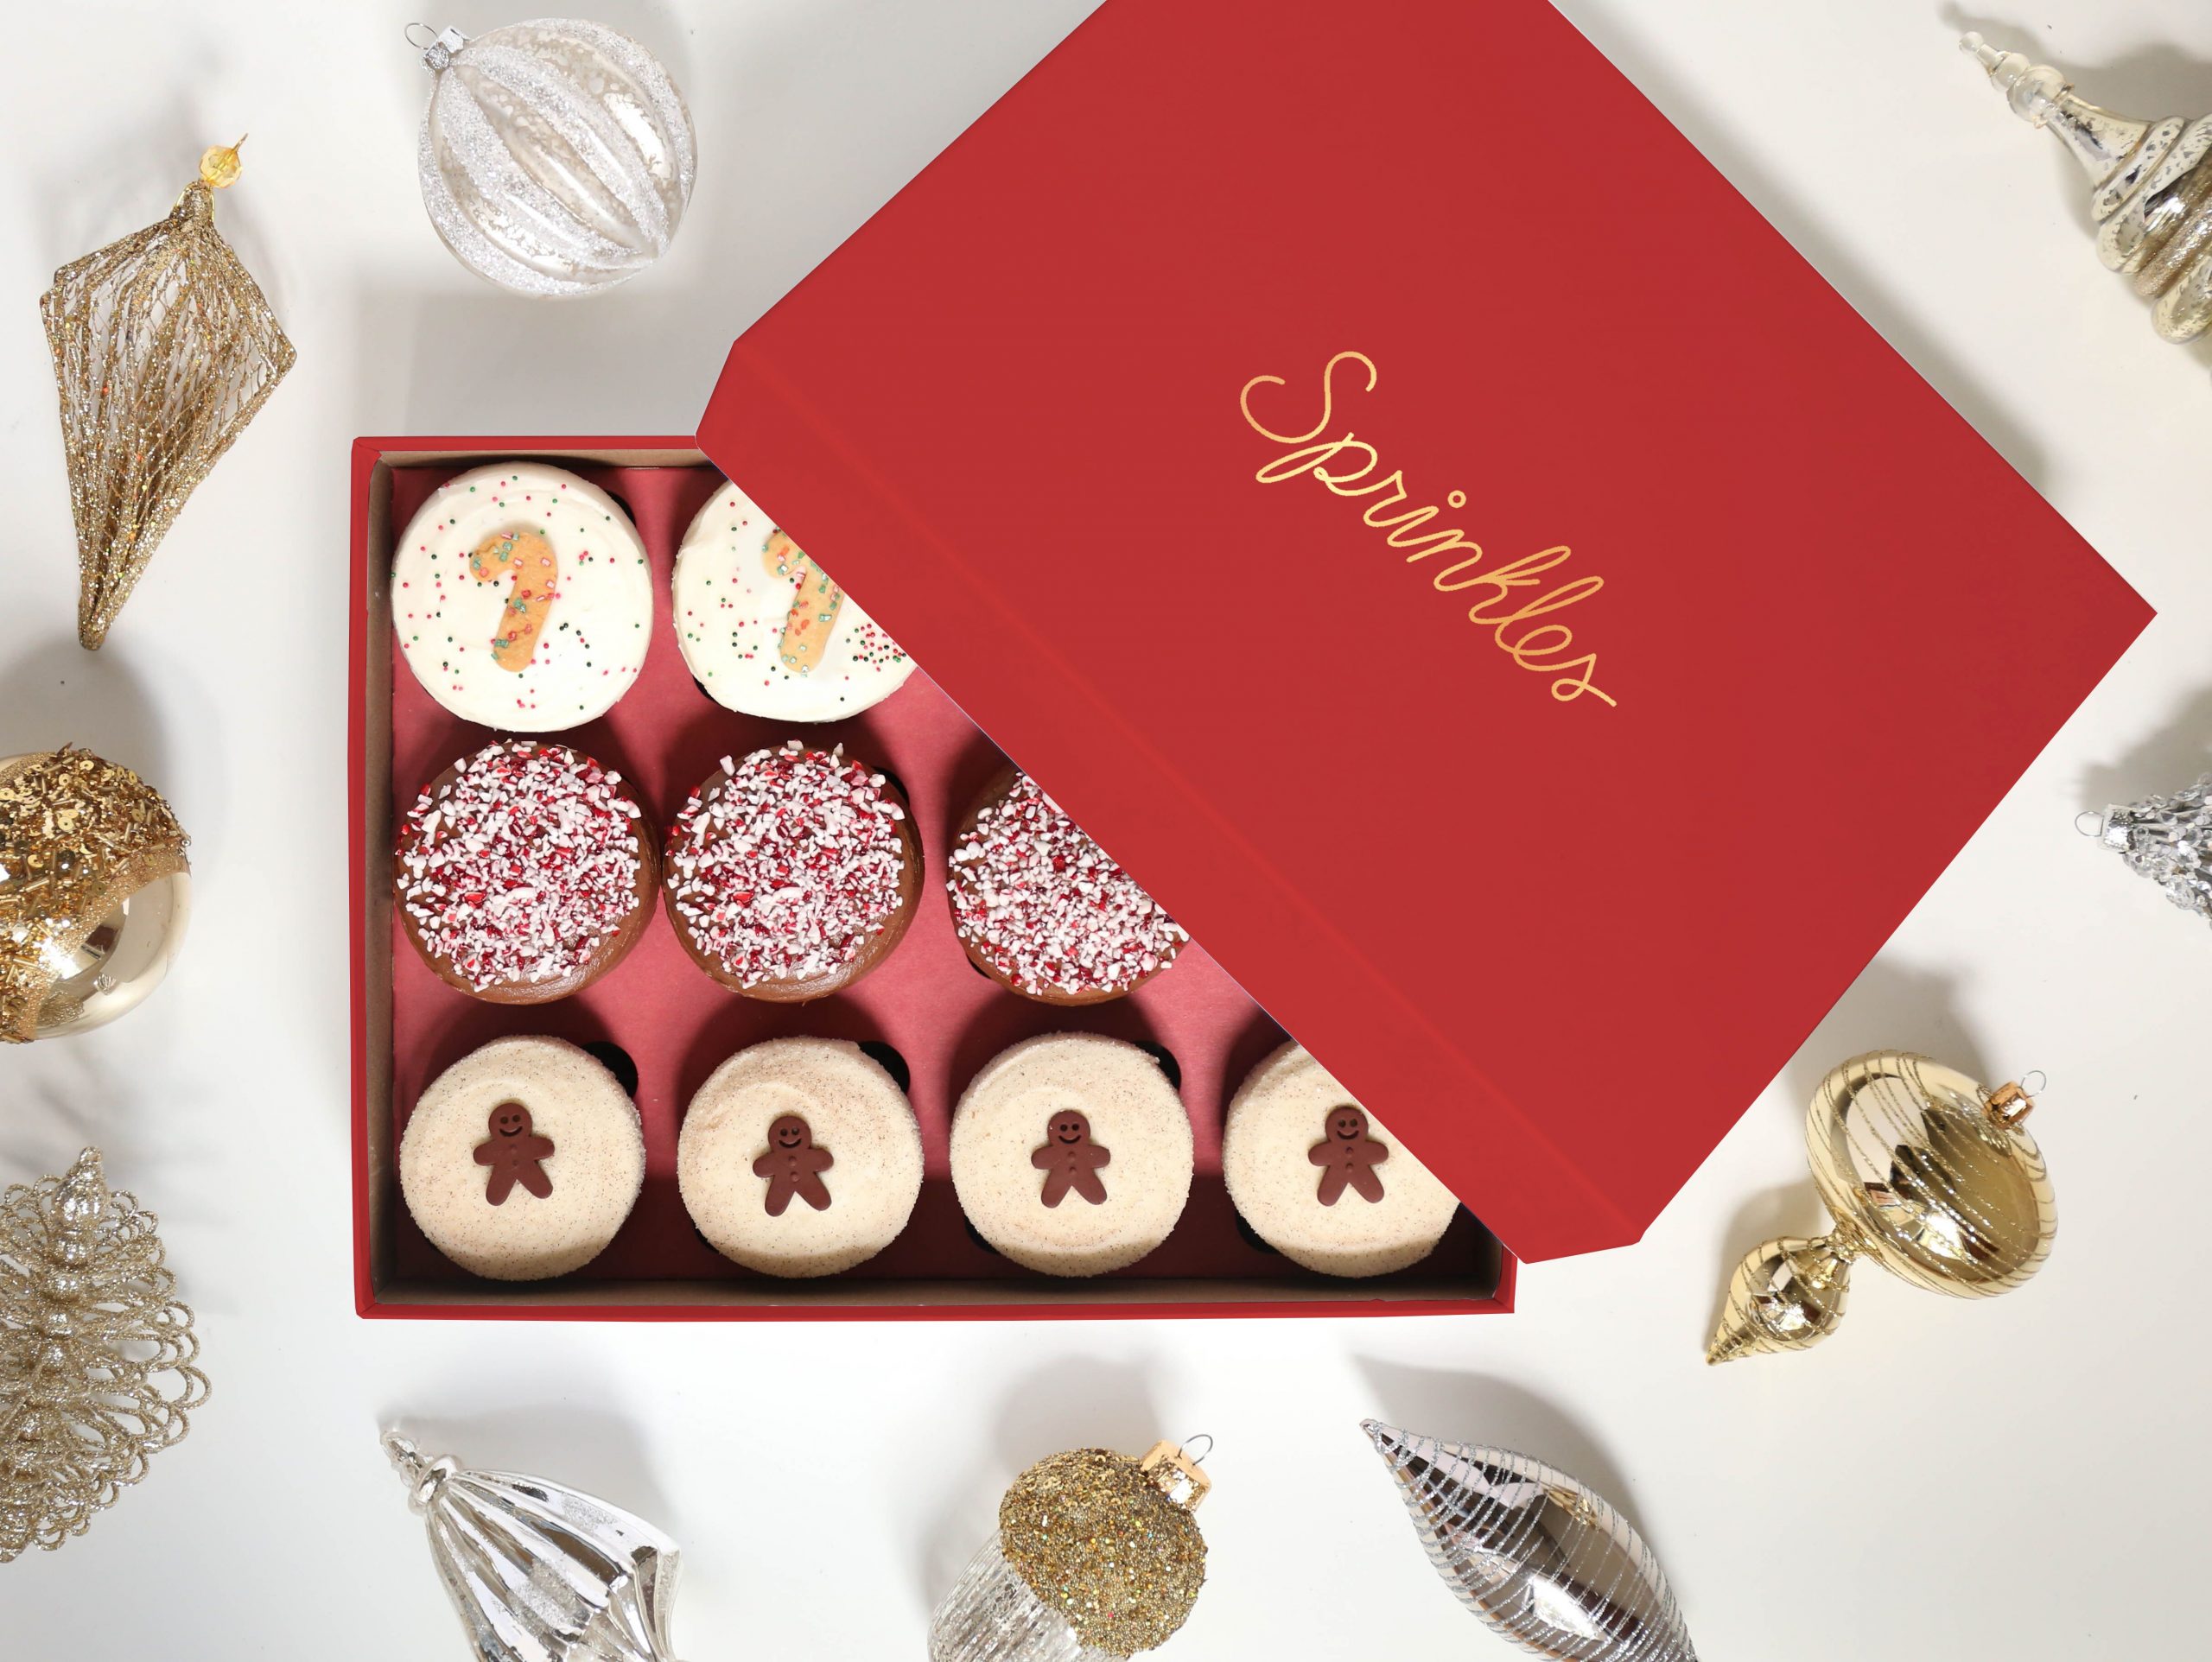 Sprinkles Cupcakes Holiday 2019 Offerings